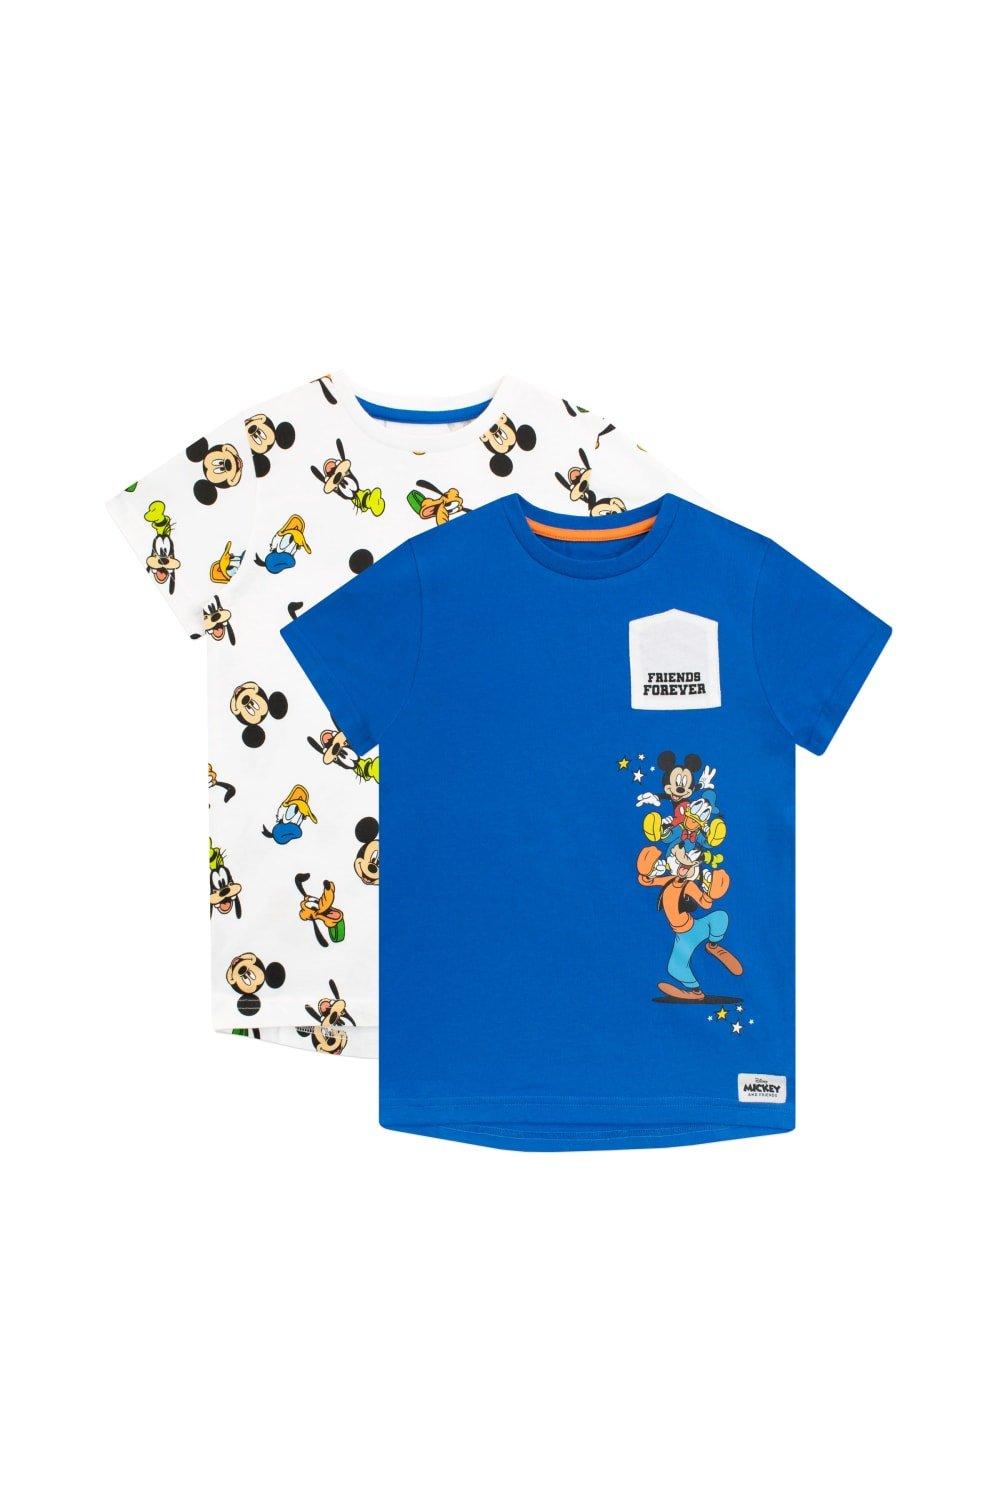 Набор футболок «Микки Маус и друзья», 2 шт. Disney, синий сумка для плавания с микки маусом disney черный